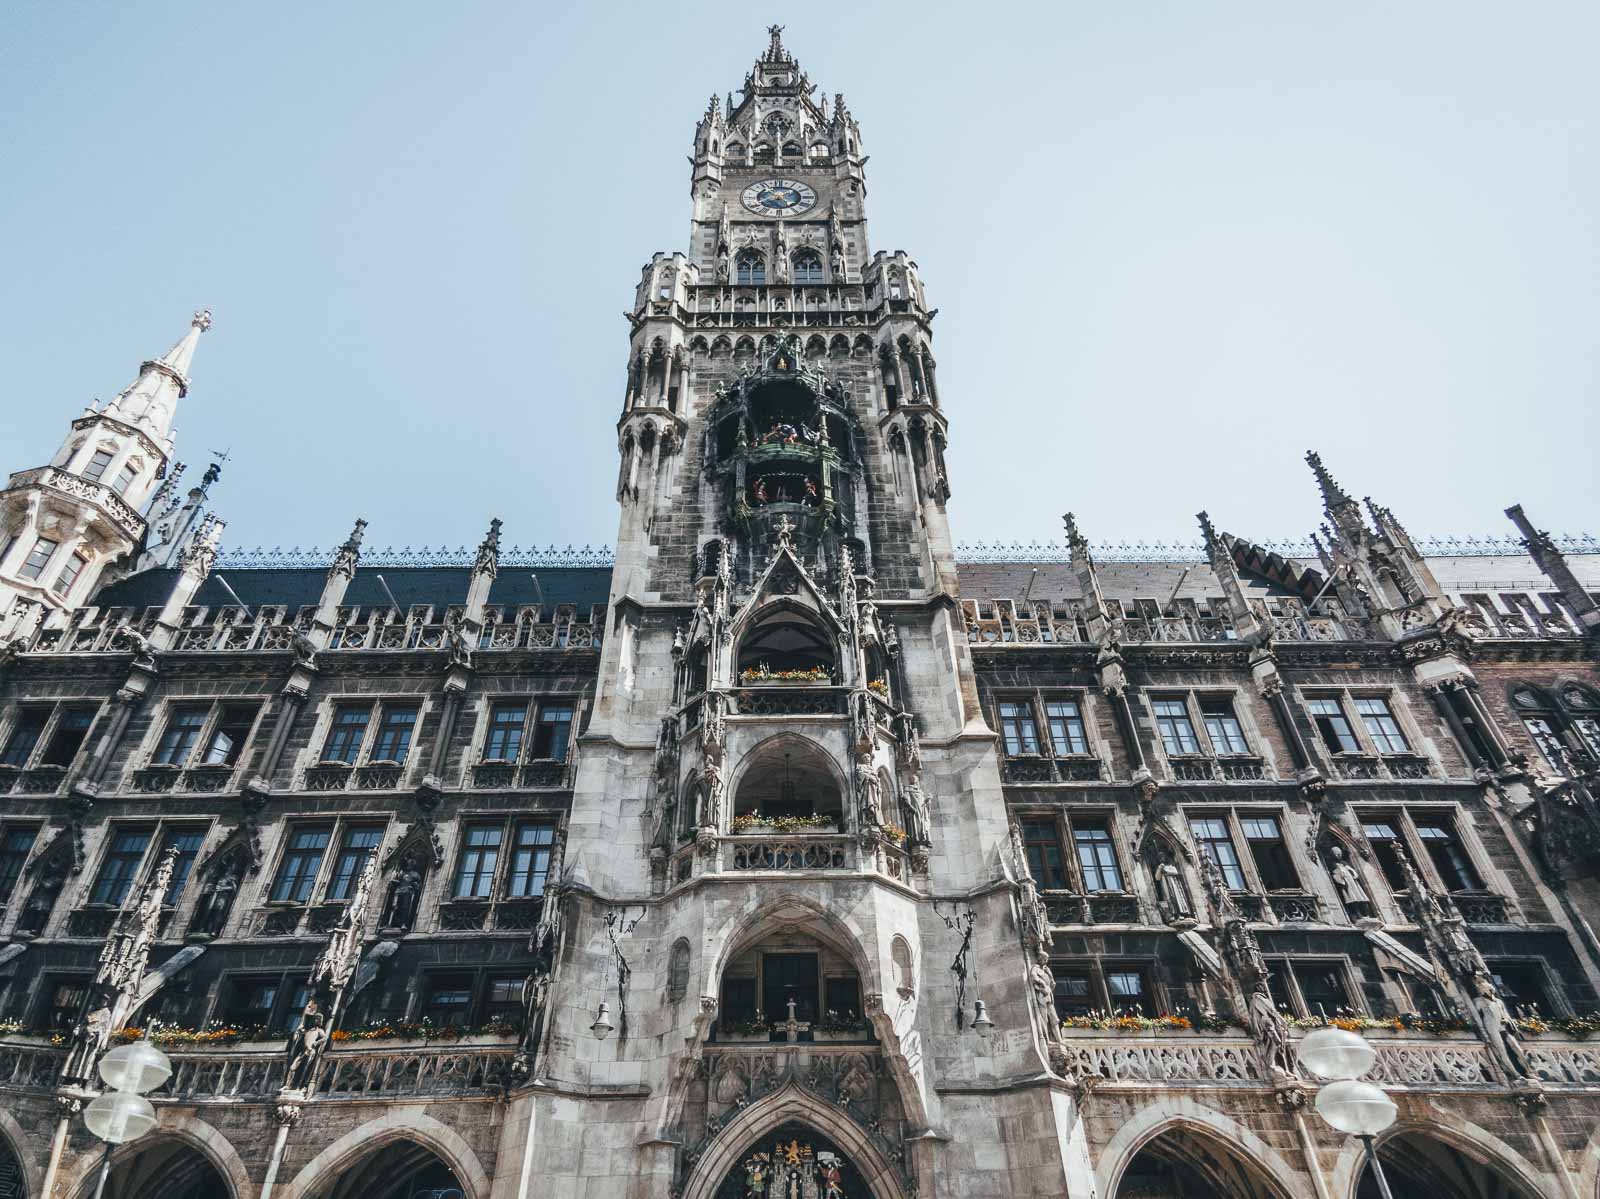 Glockenspiel in Munich Germany